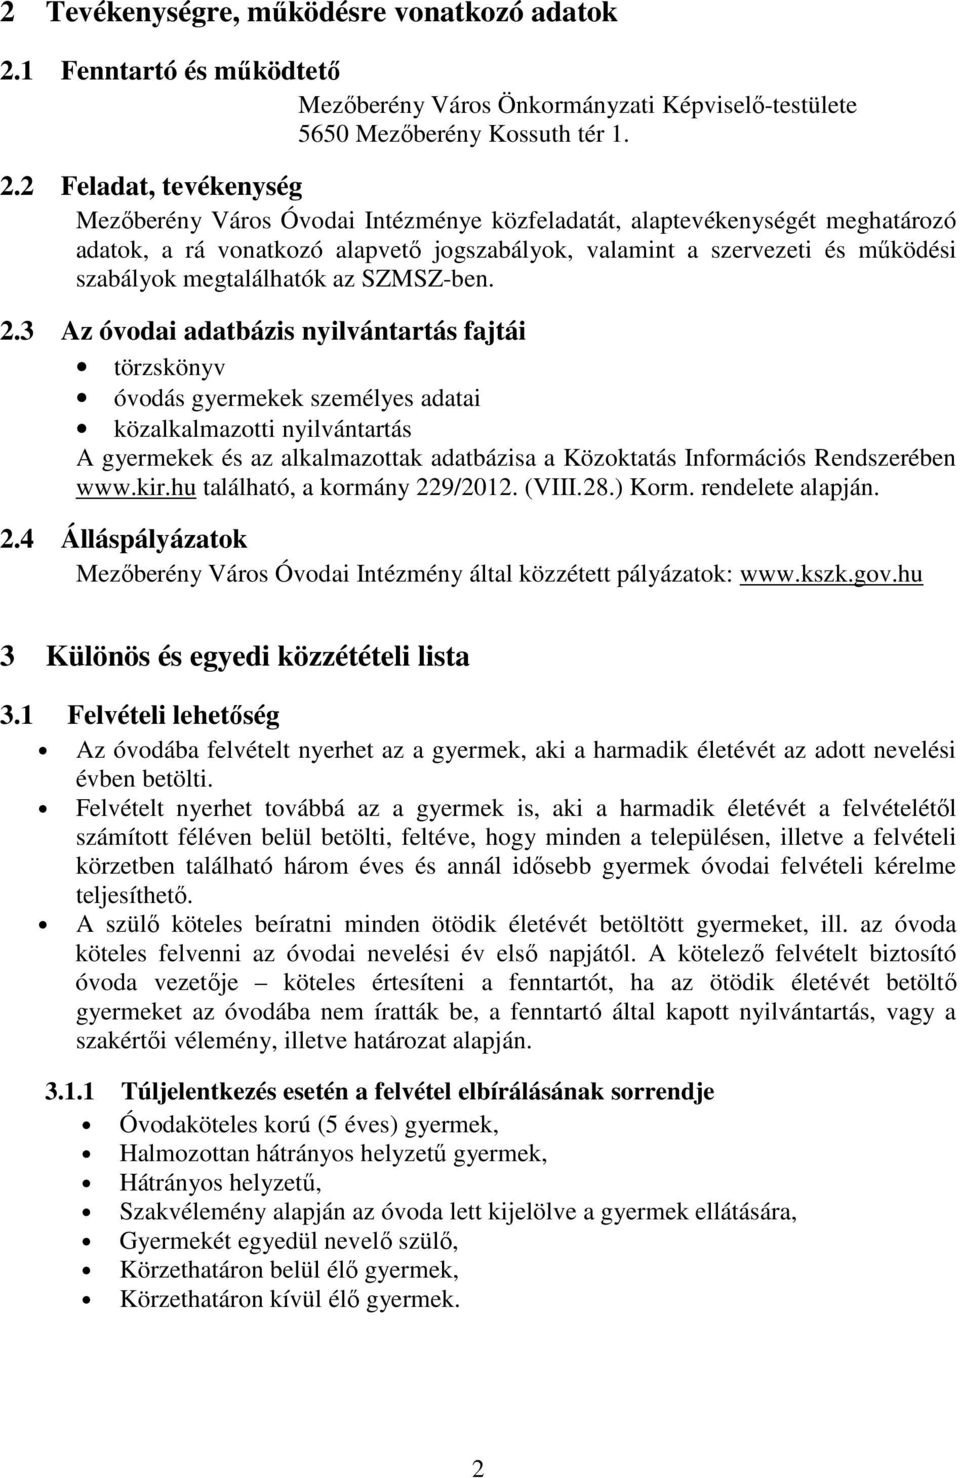 2 Feladat, tevékenység Mezıberény Város Óvodai Intézménye közfeladatát, alaptevékenységét meghatározó adatok, a rá vonatkozó alapvetı jogszabályok, valamint a szervezeti és mőködési szabályok